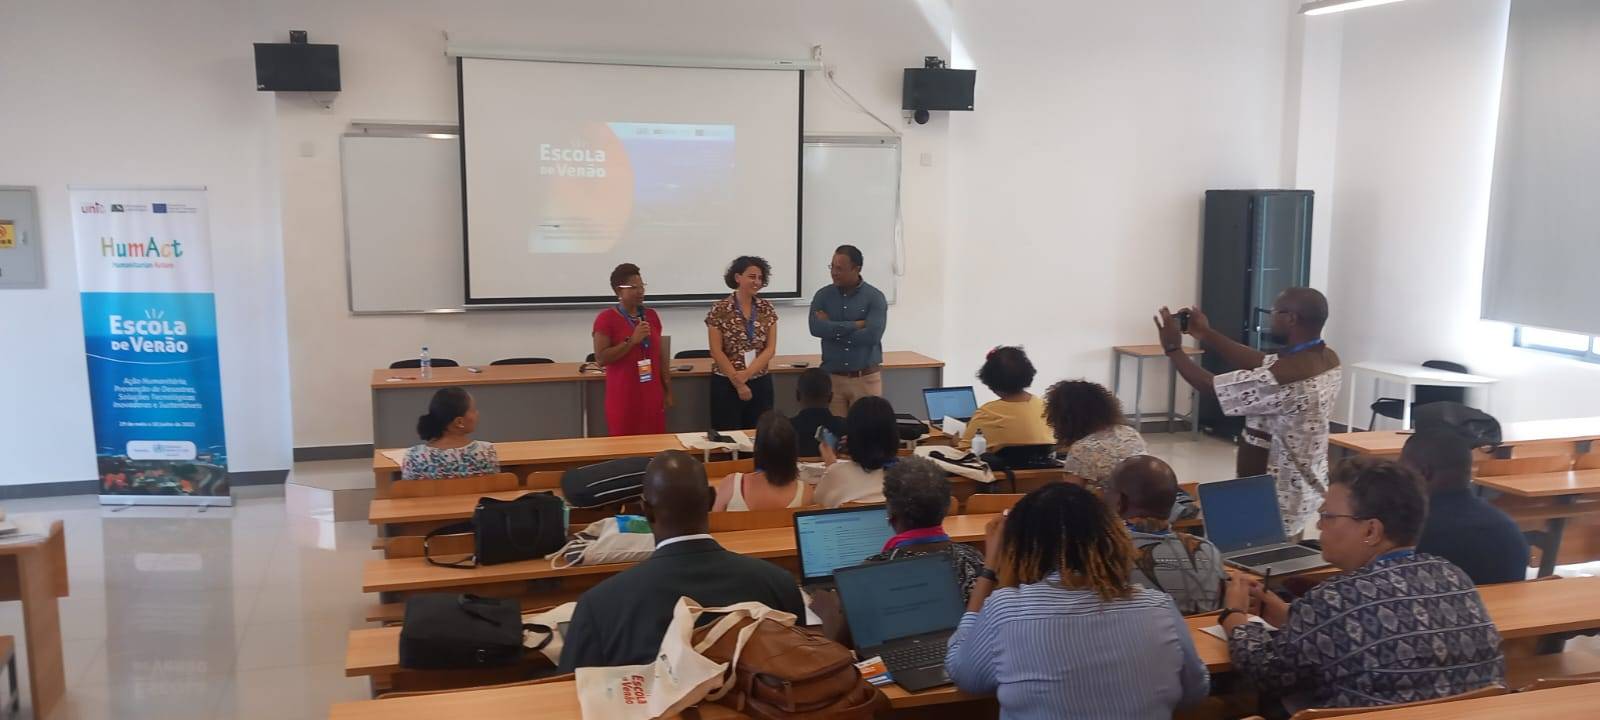 Projeto HumAct na Escola de Verão de Cabo Verde